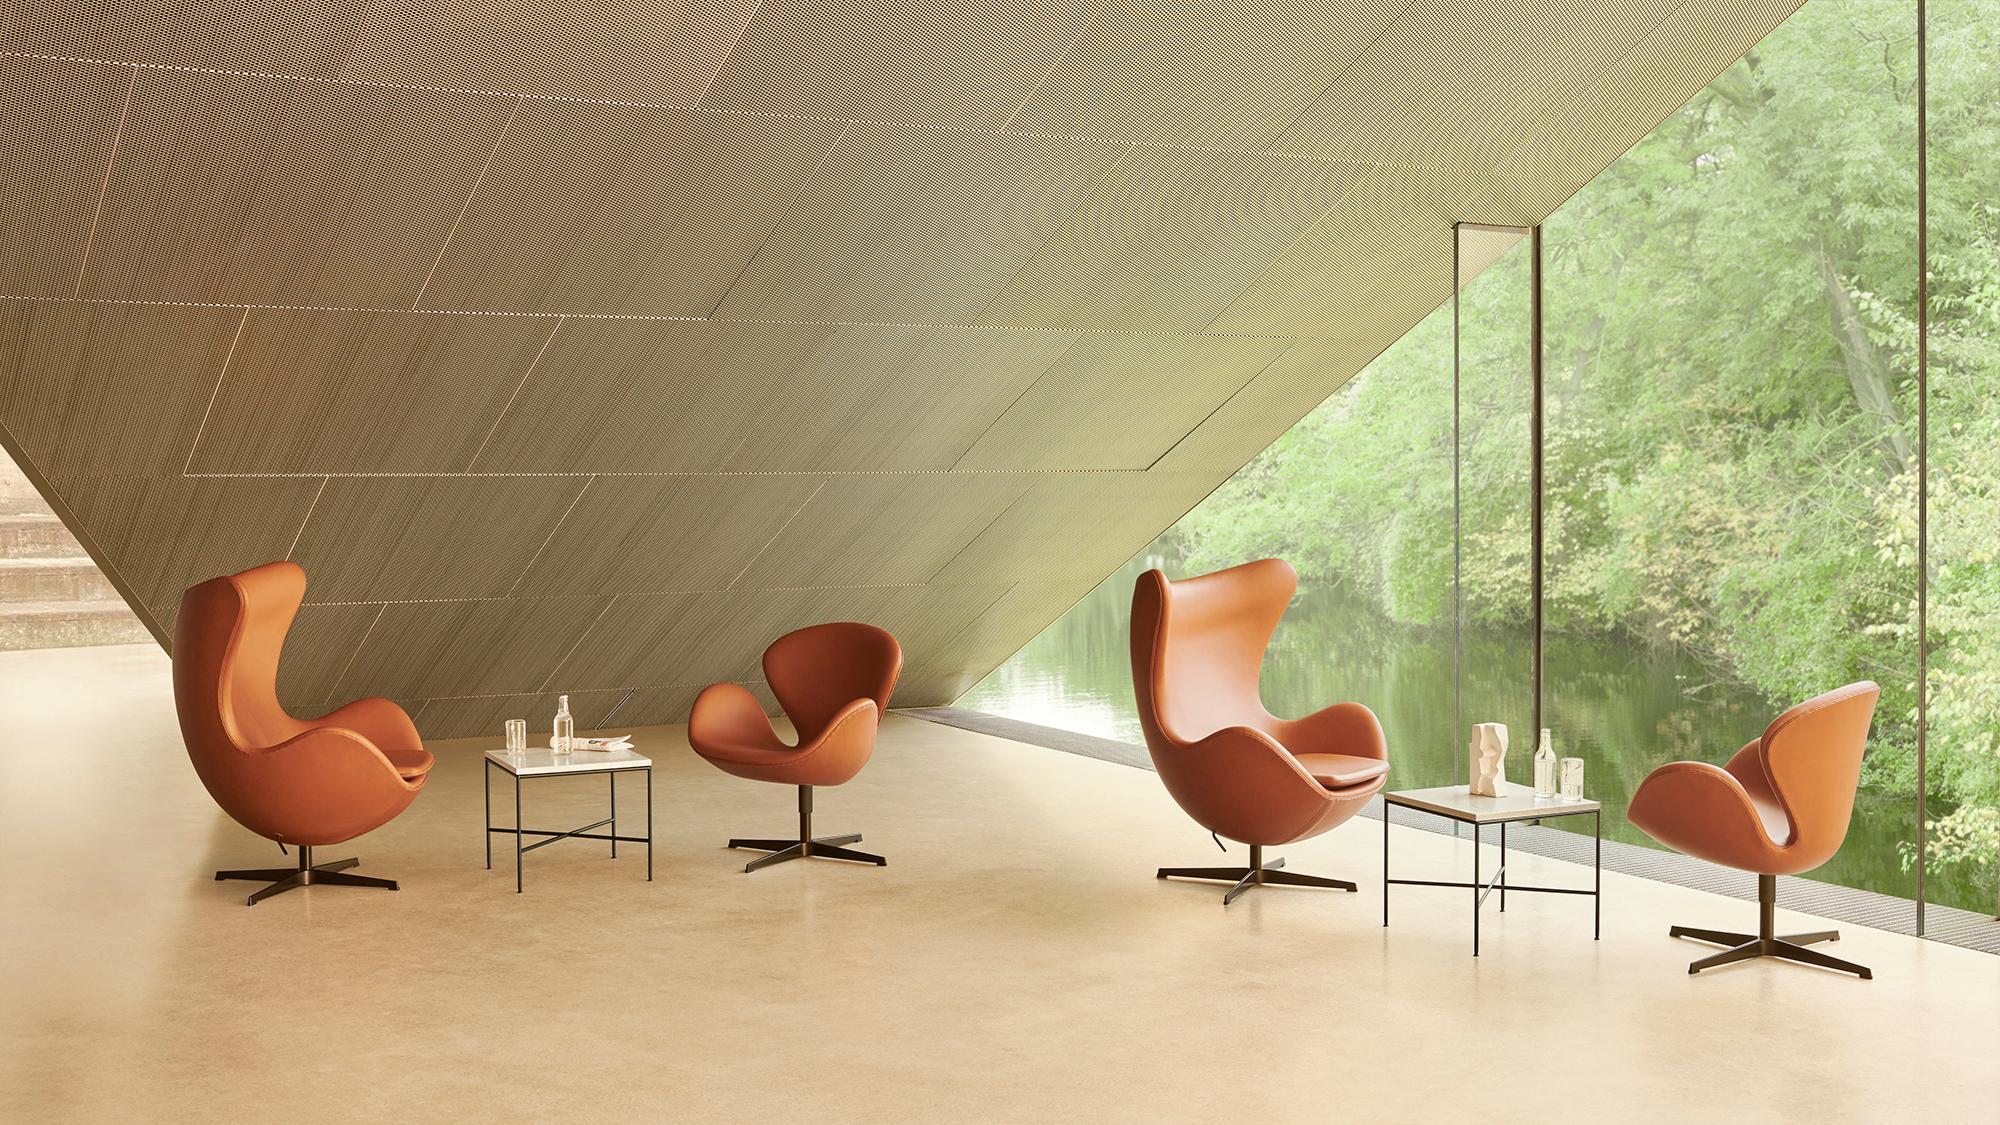 Chaise 'Swan' d'Arne Jacobsen pour Fritz Hansen en cuir (Cat. 5).

Fondée en 1872, la société Fritz Hansen est devenue synonyme de design danois légendaire. Alliant un savoir-faire intemporel à un souci de durabilité, les rééditions par la marque de